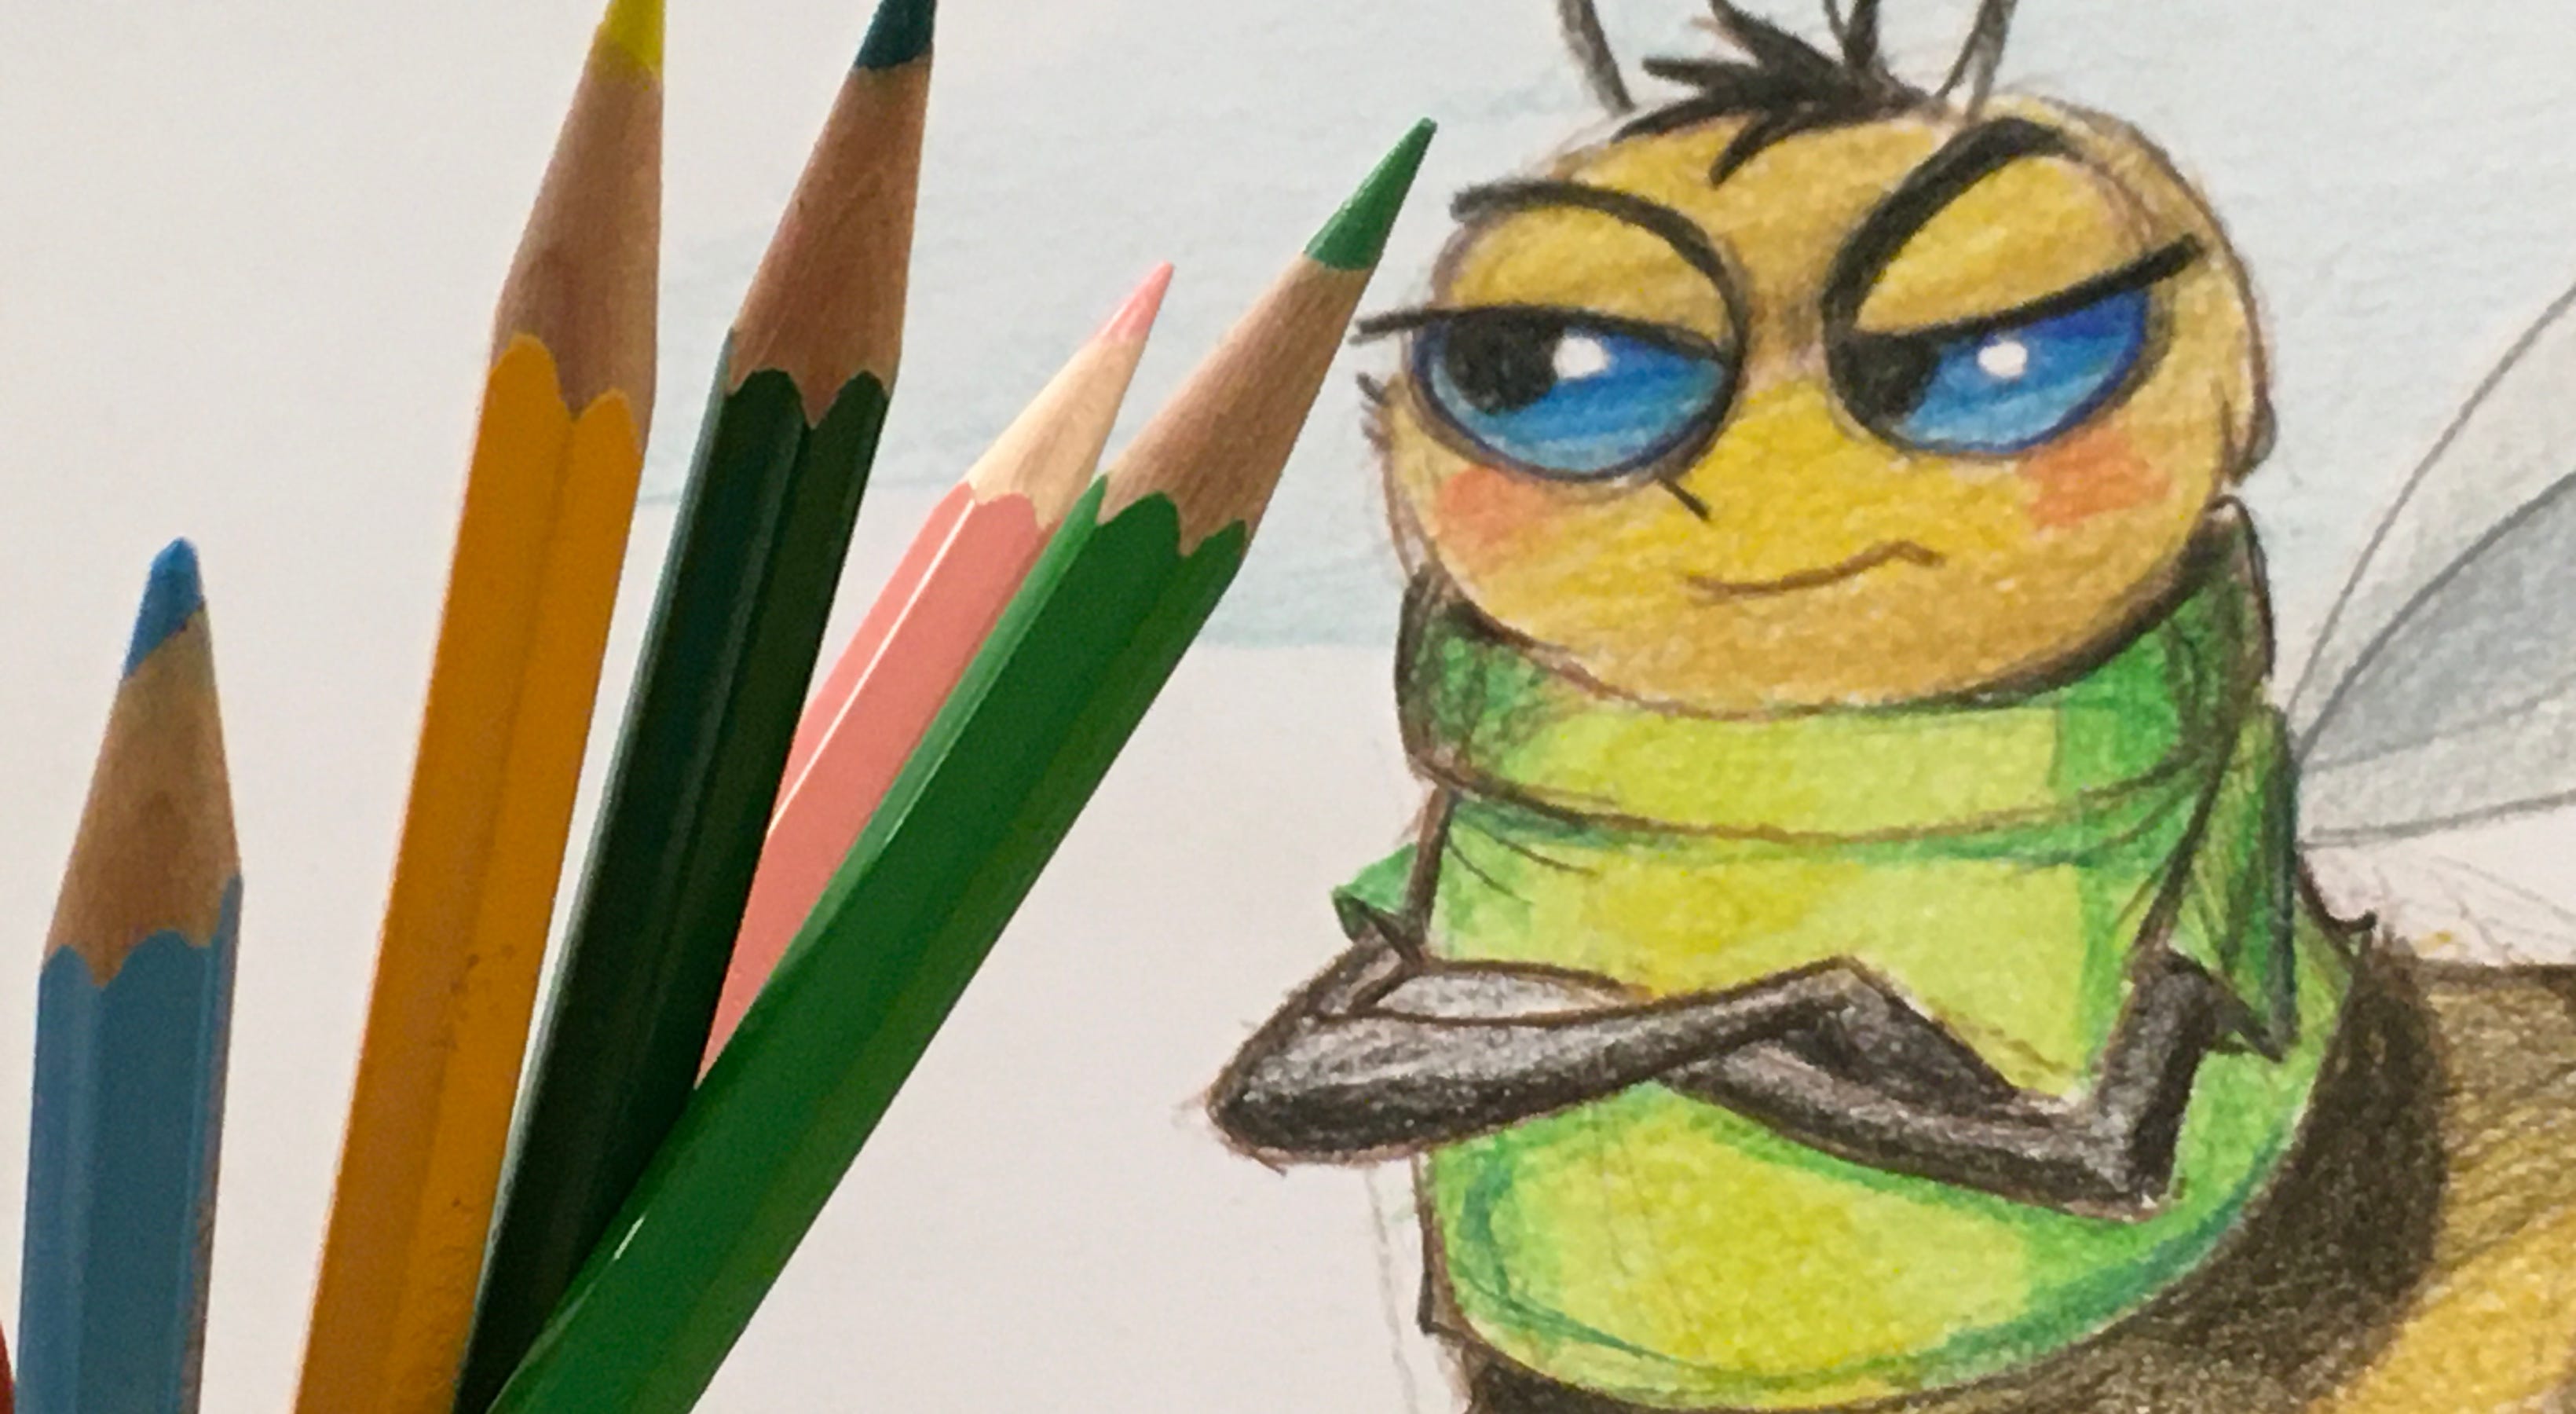 Cours de dessin de création personnage stylisé d'après une illustration de film "Bee" de Pixar